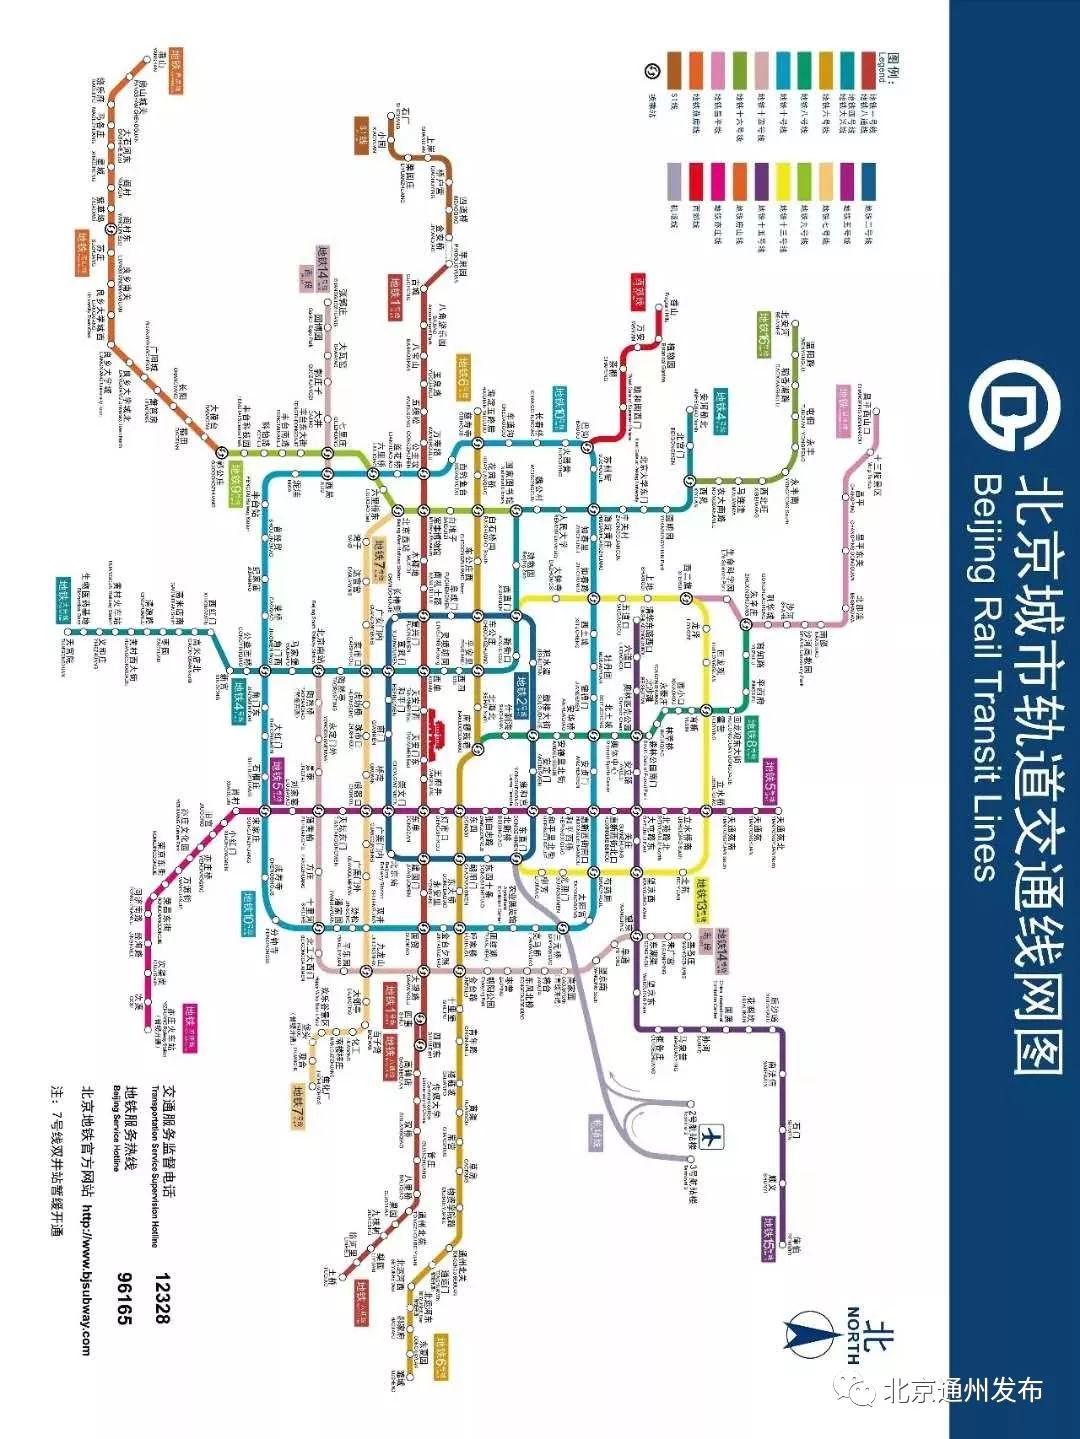 通州小布( 北京通州发布:bjtzfb)送您 最新版北京地铁线路图,快来找找